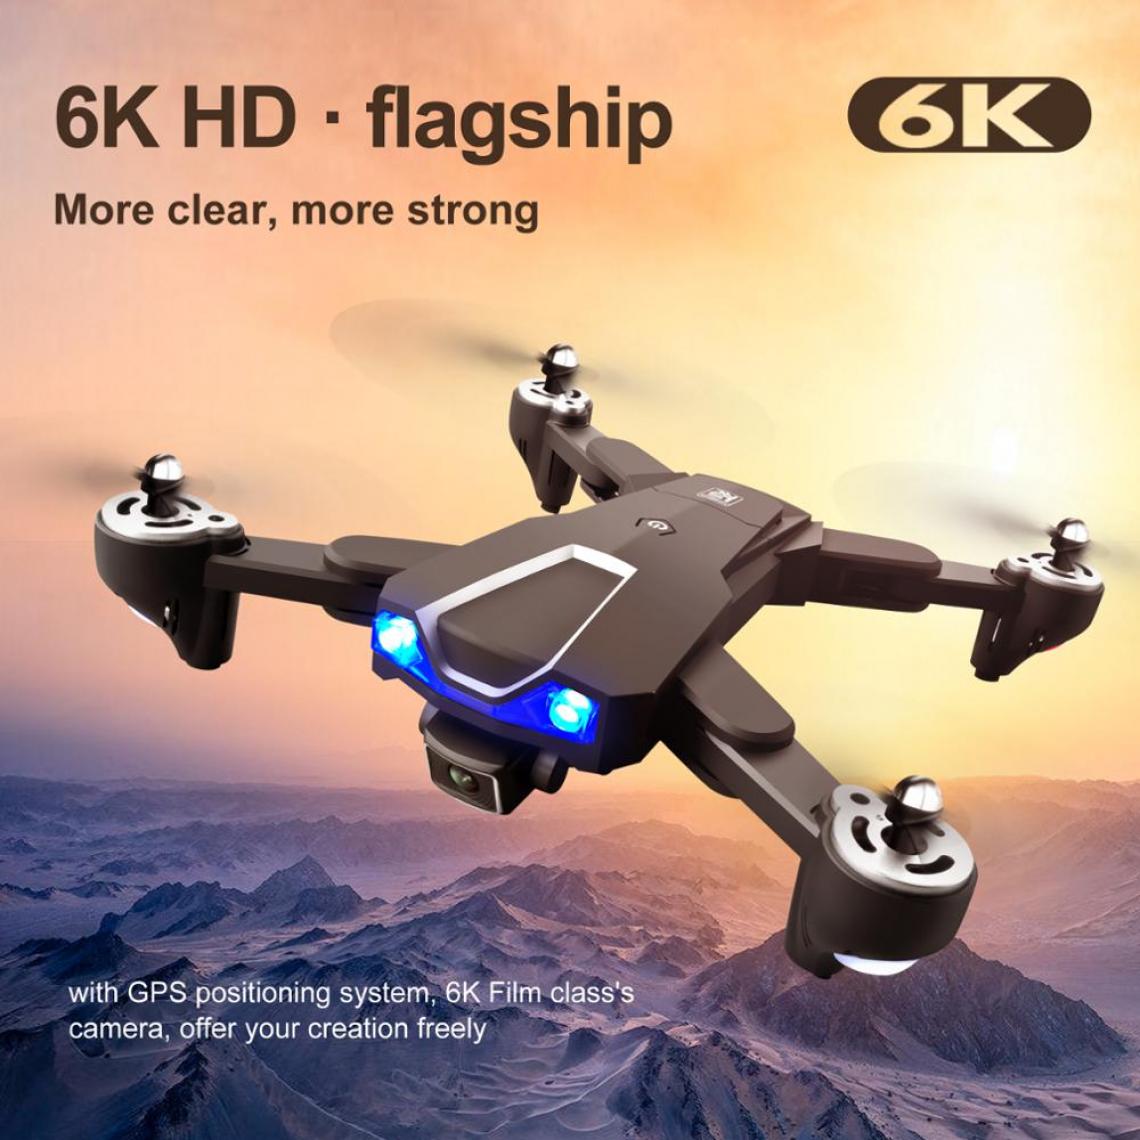 Universal - LS 25 drone 5G wifi GPS avec 6k HD caméra double caméra mode selfie traçage ME image transmission en temps réel pliable RC quadcopter | RC quadcopter(Le noir) - Drone